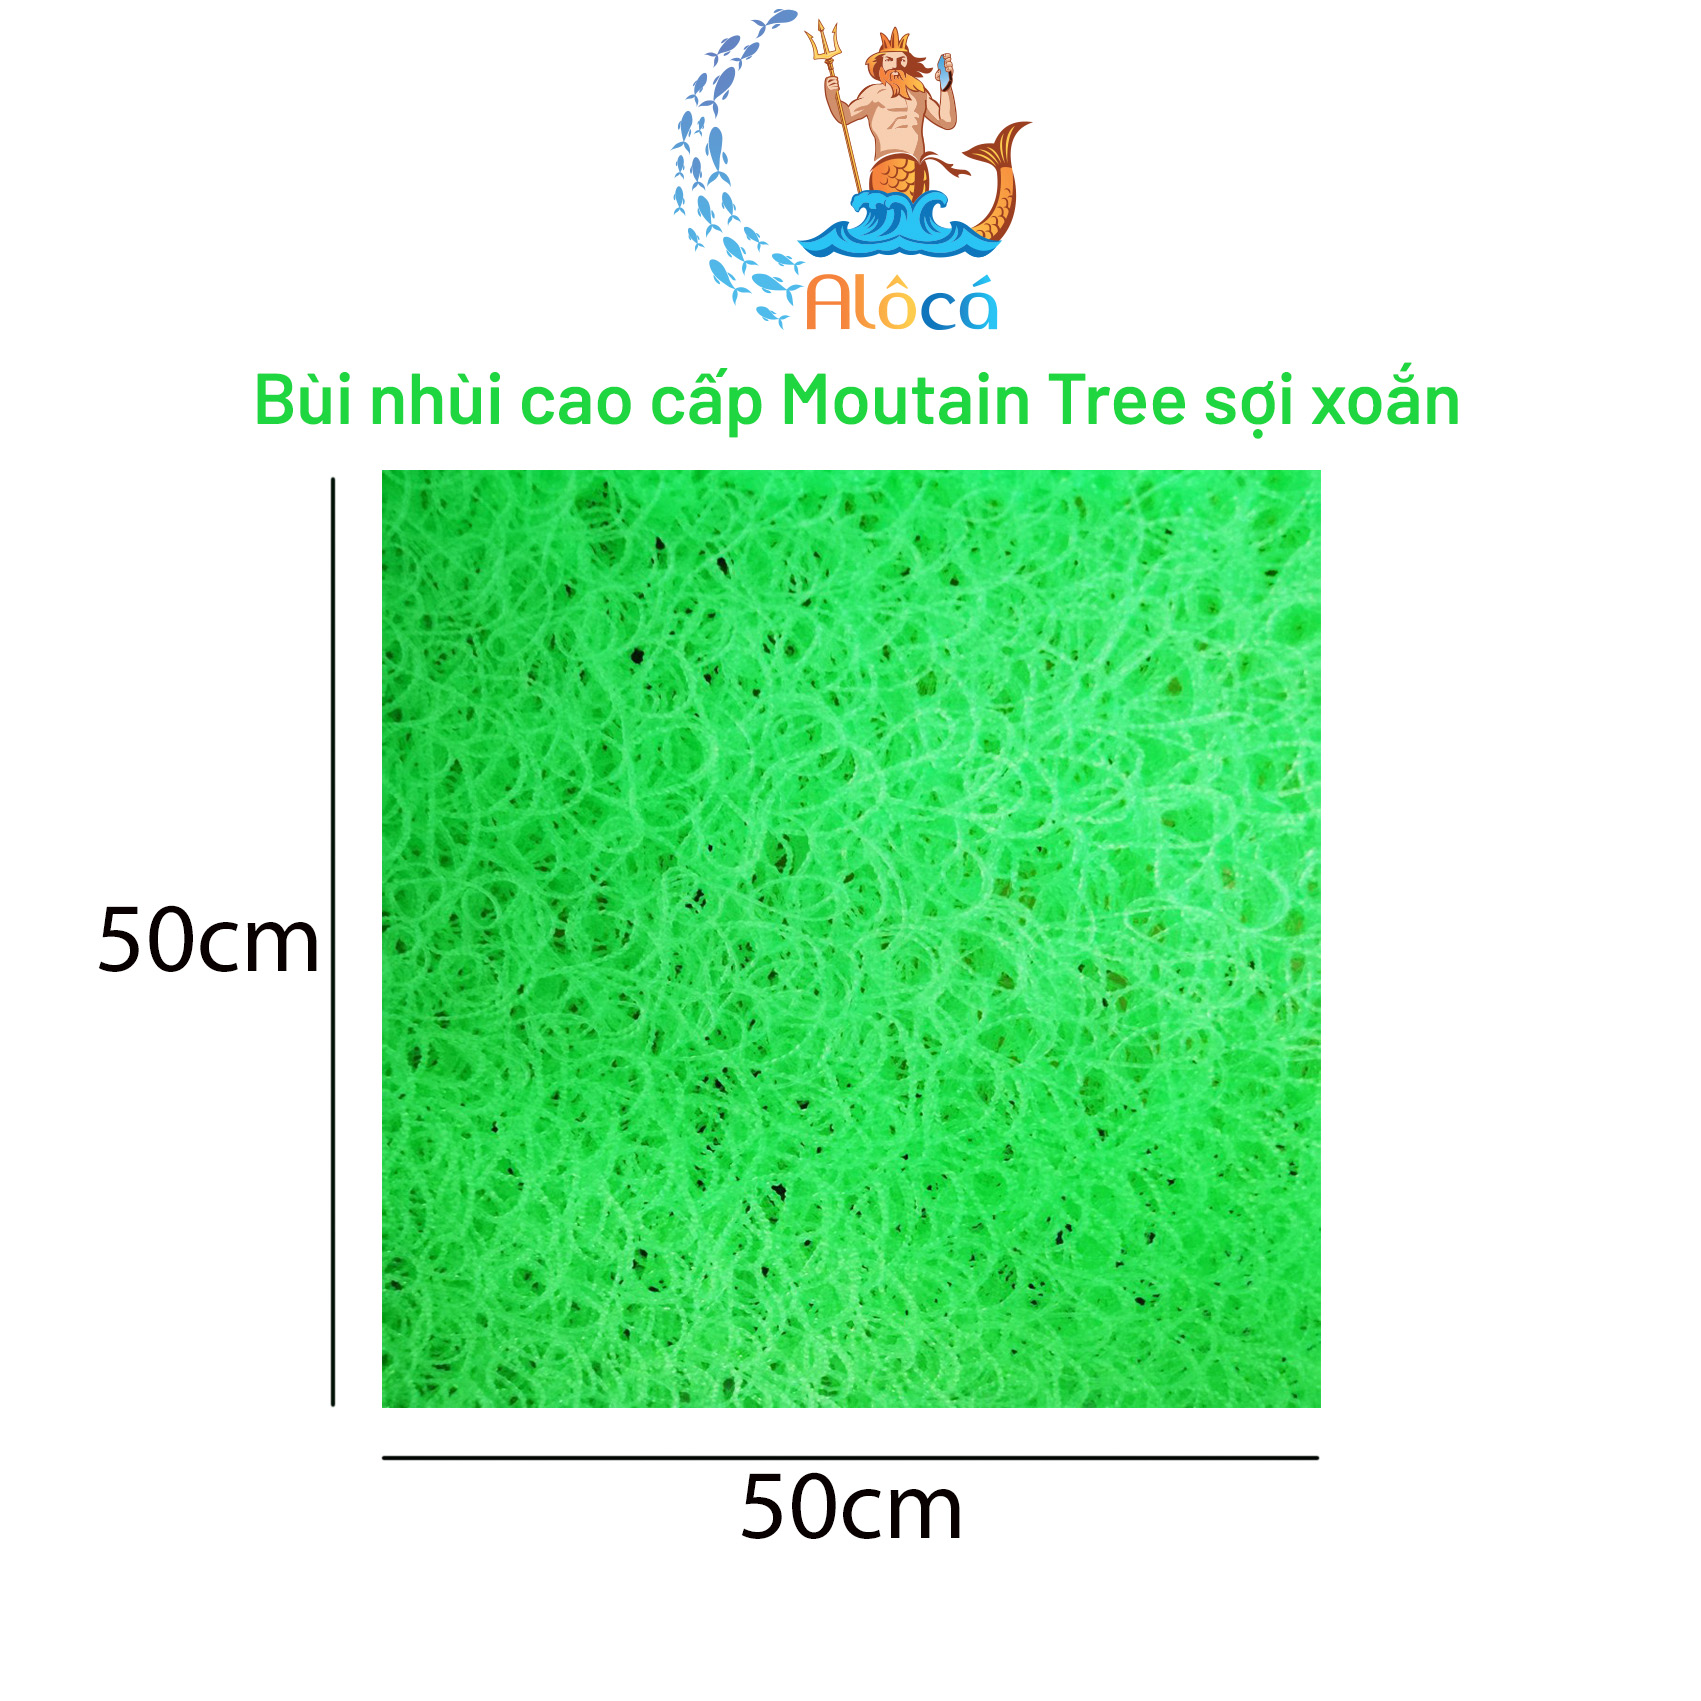 Bùi nhùi Mountain Tree không keo cỡ 50x20cm đến 50x50cm làm sạch nước bể